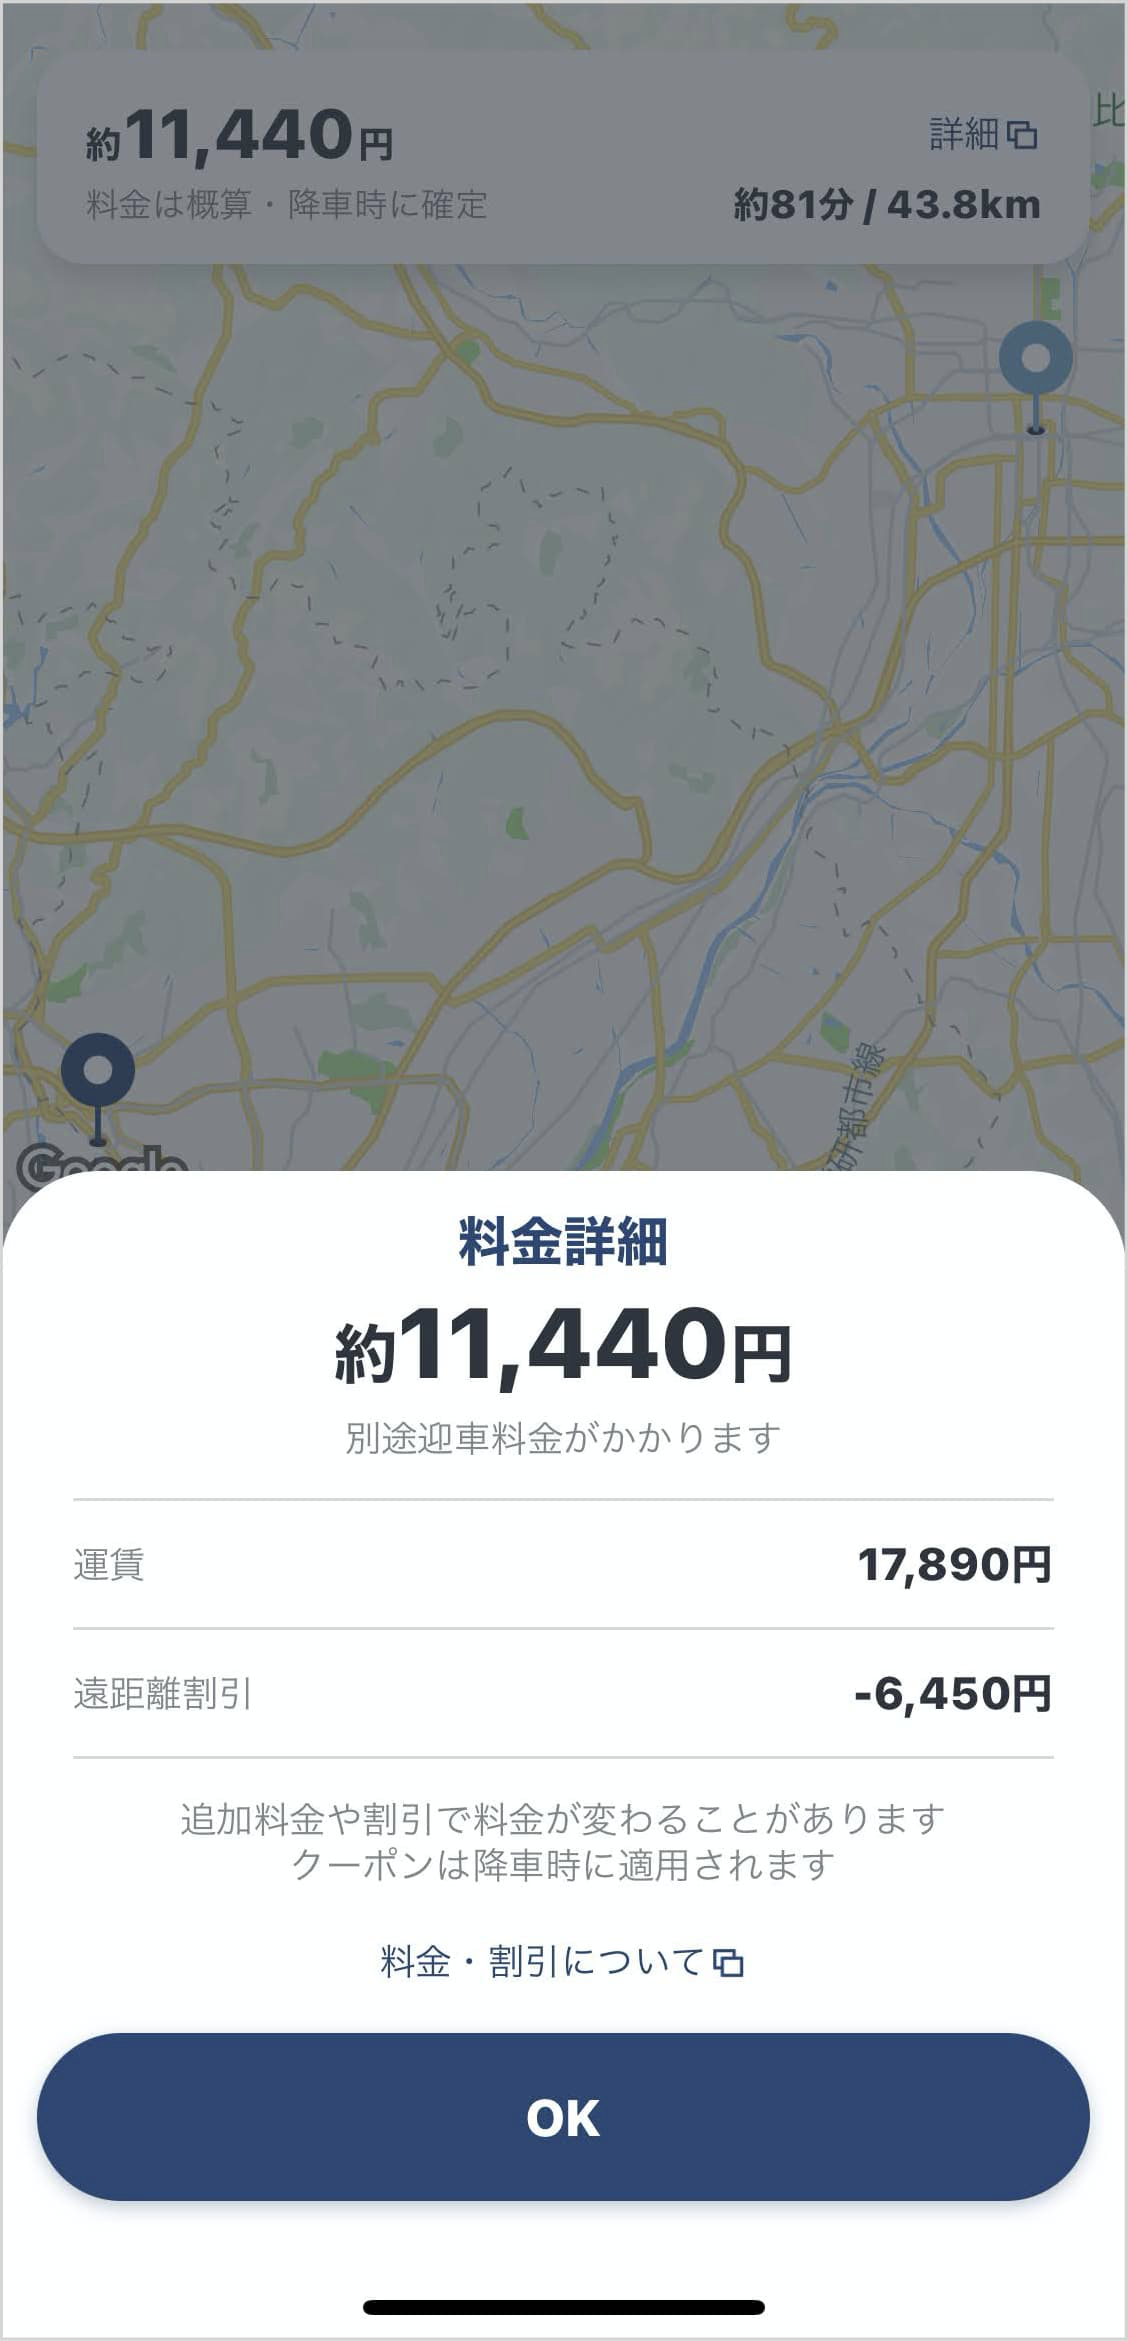 伊丹空港⇔京都のタクシー料金相場とおすすめ定額タクシー